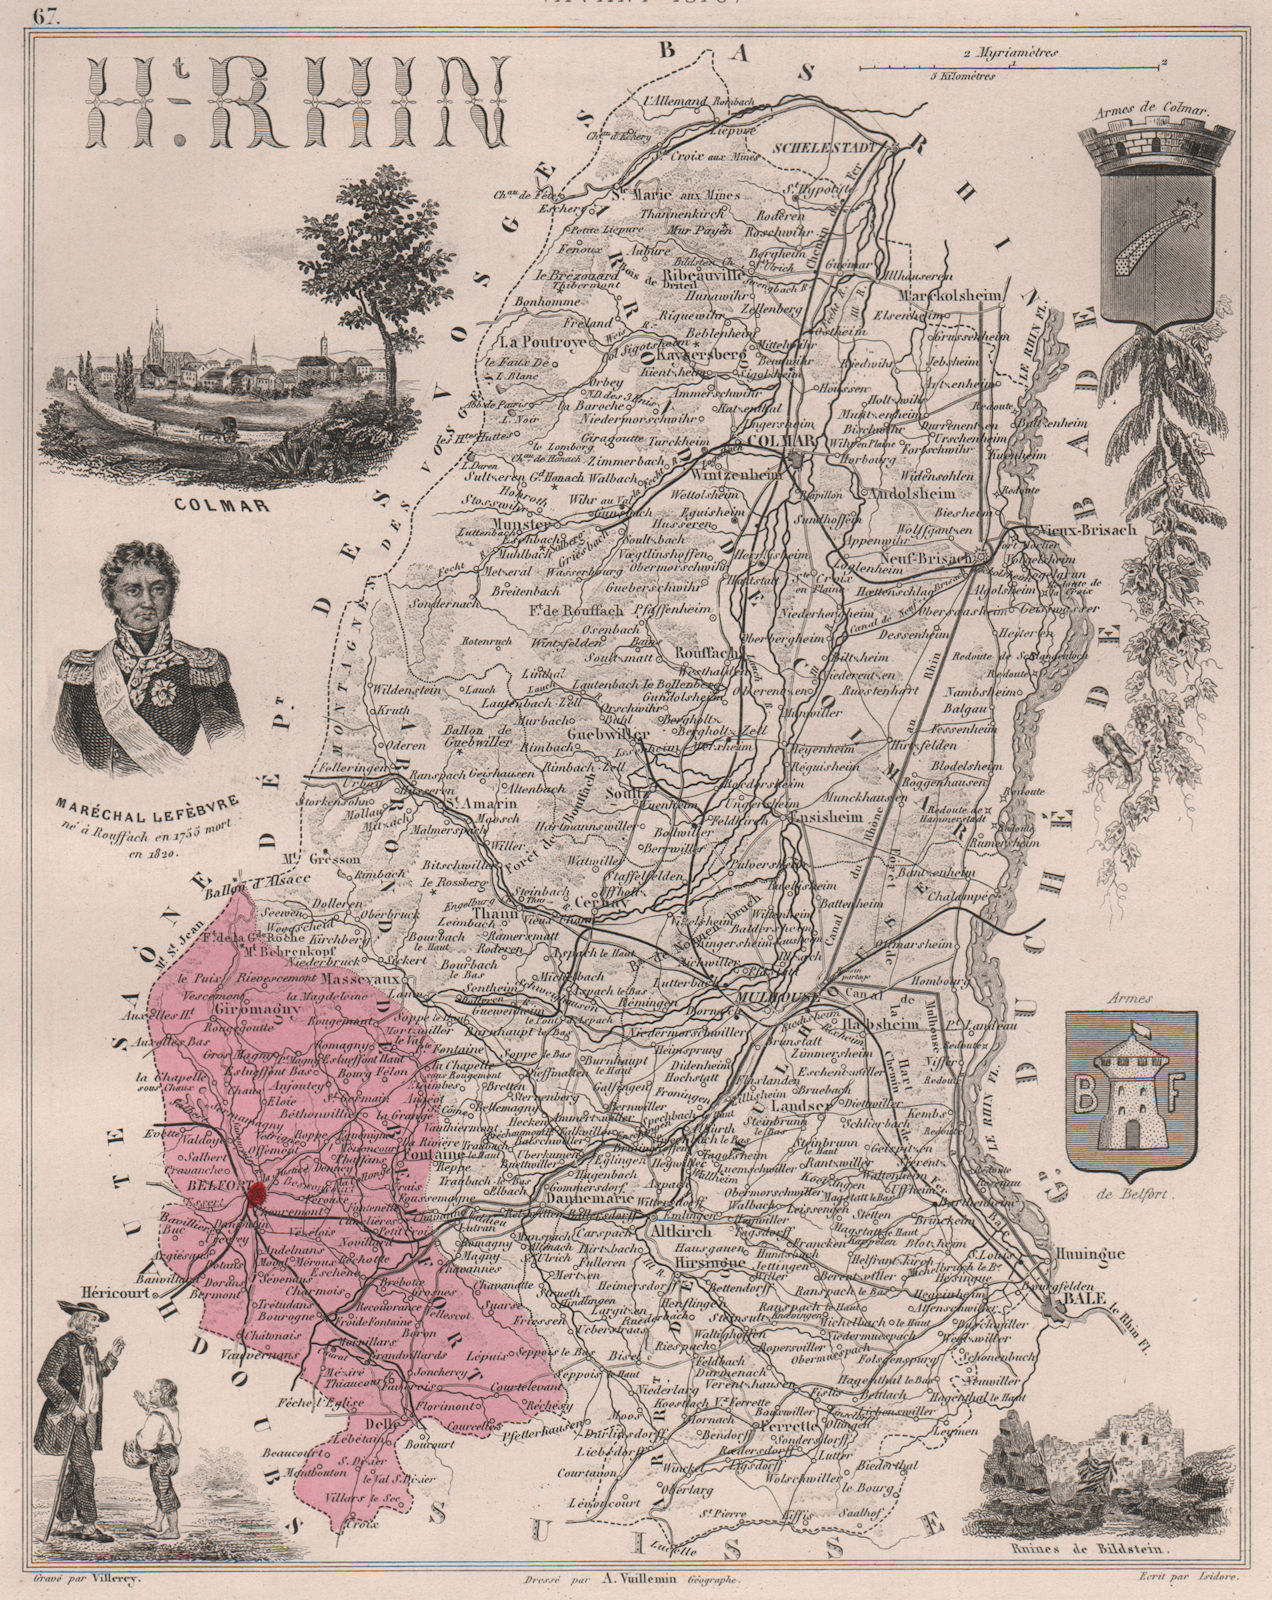 Associate Product HAUT-RHIN après/after 1870. Département. Colmar. Lefèbvre. VUILLEMIN 1879 map